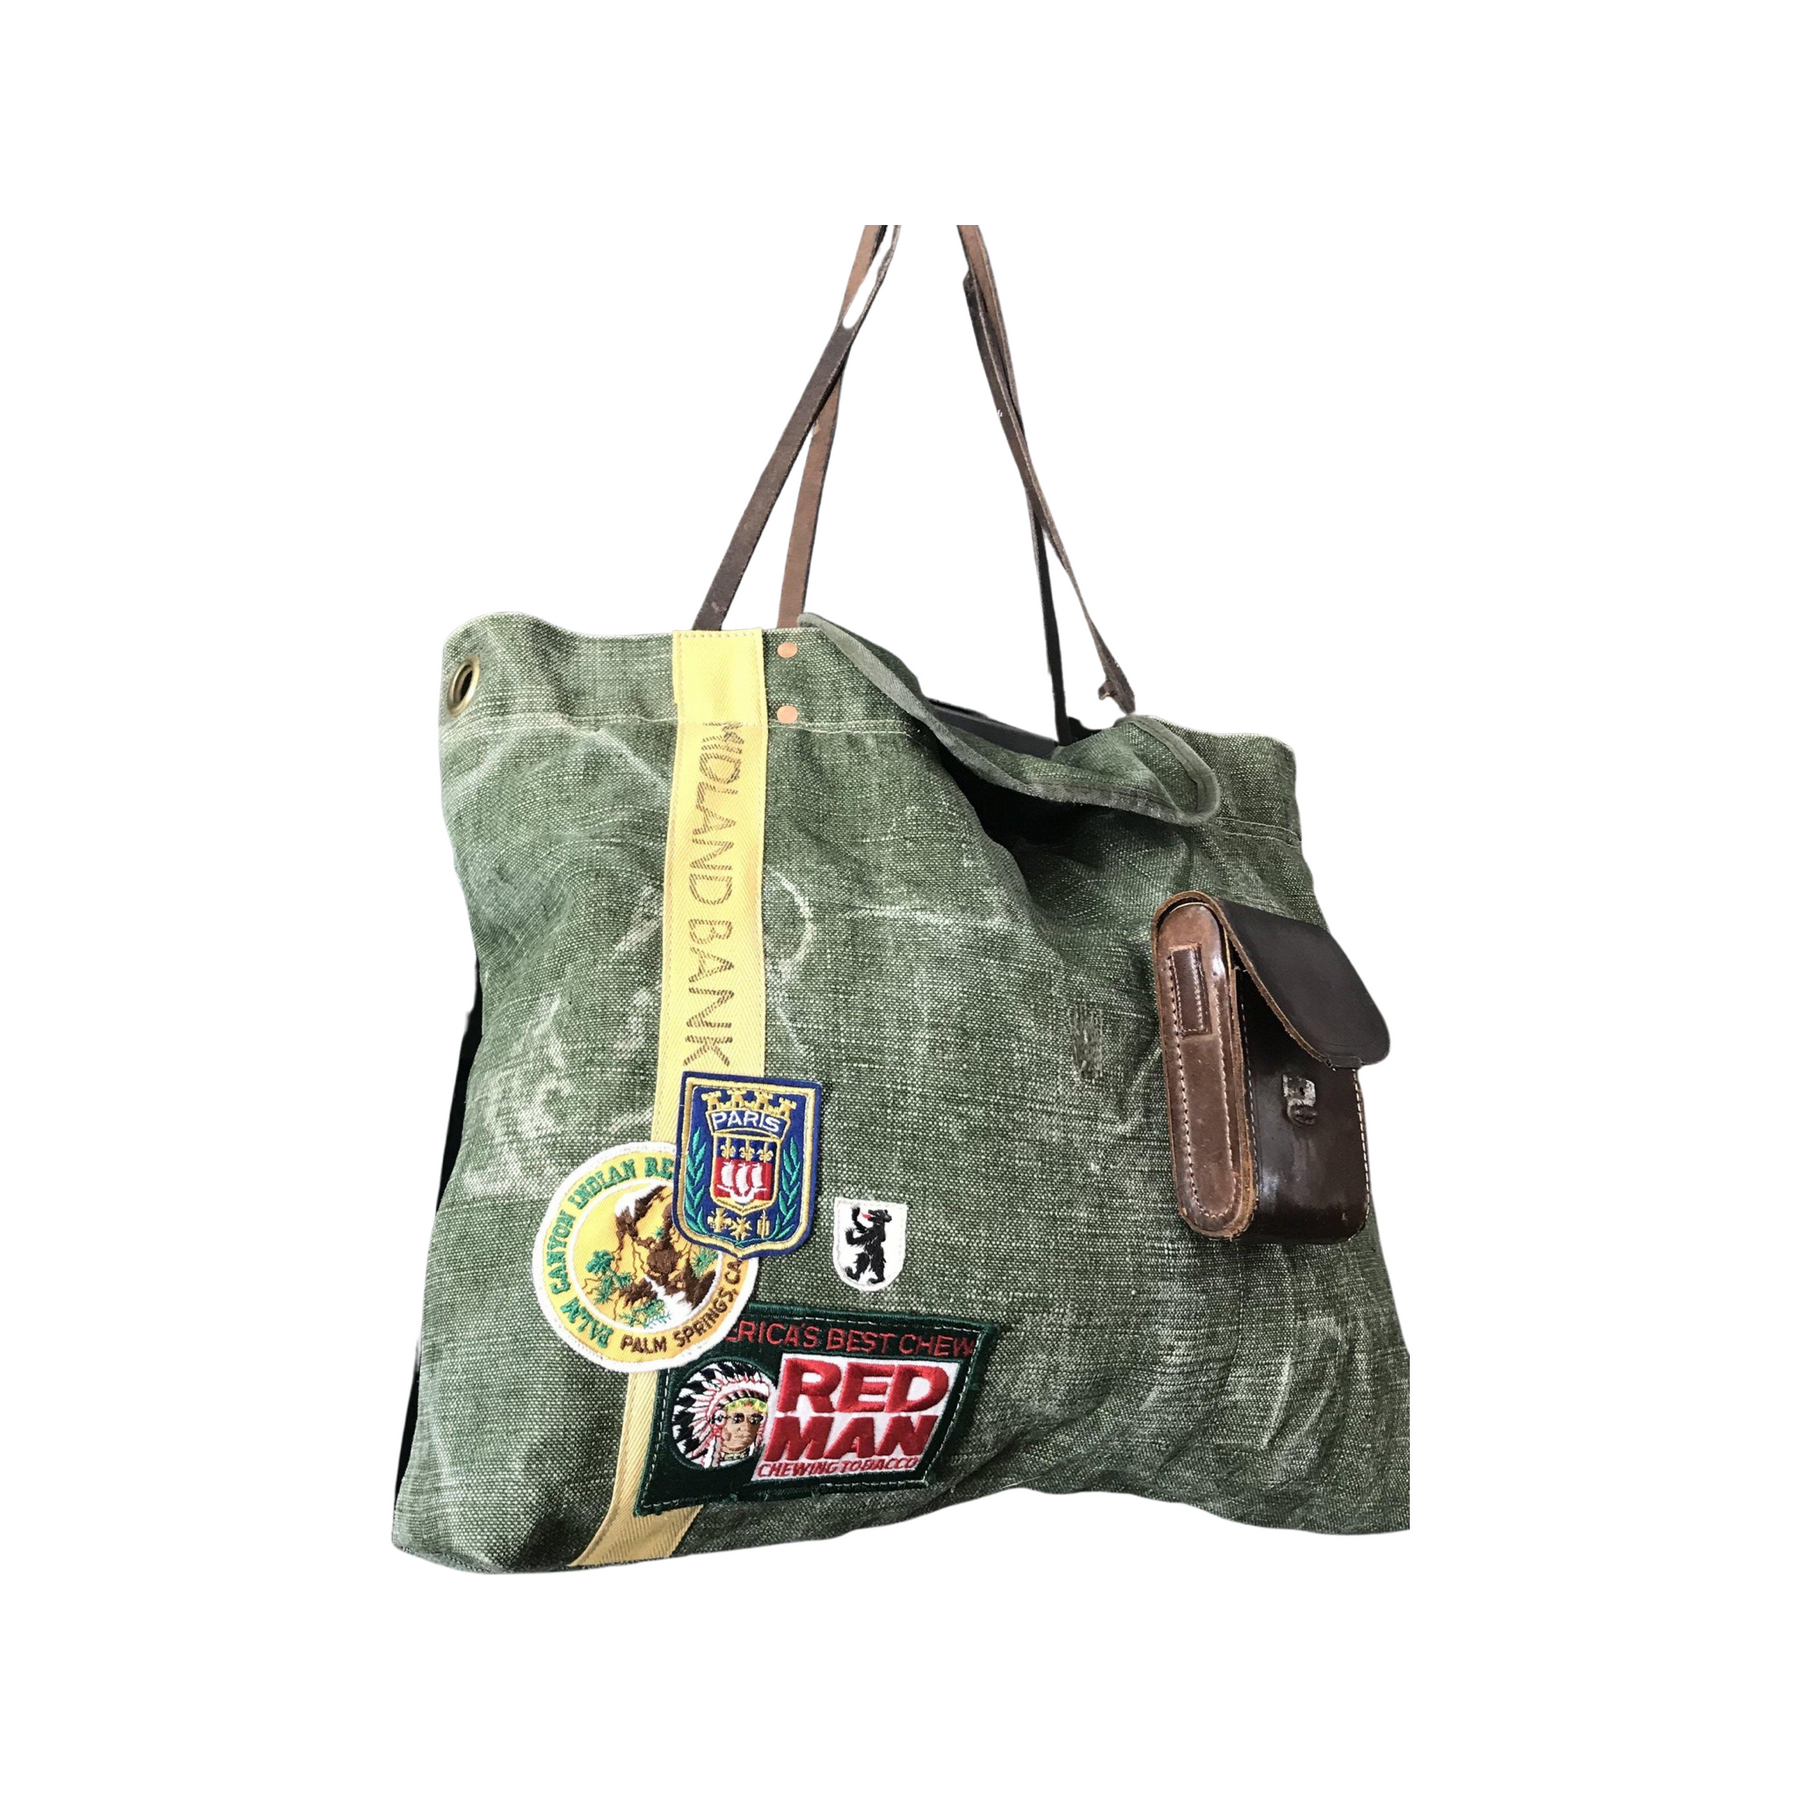 Vintage Military Shoulder Bag, Army Canvas Messenger … - Gem